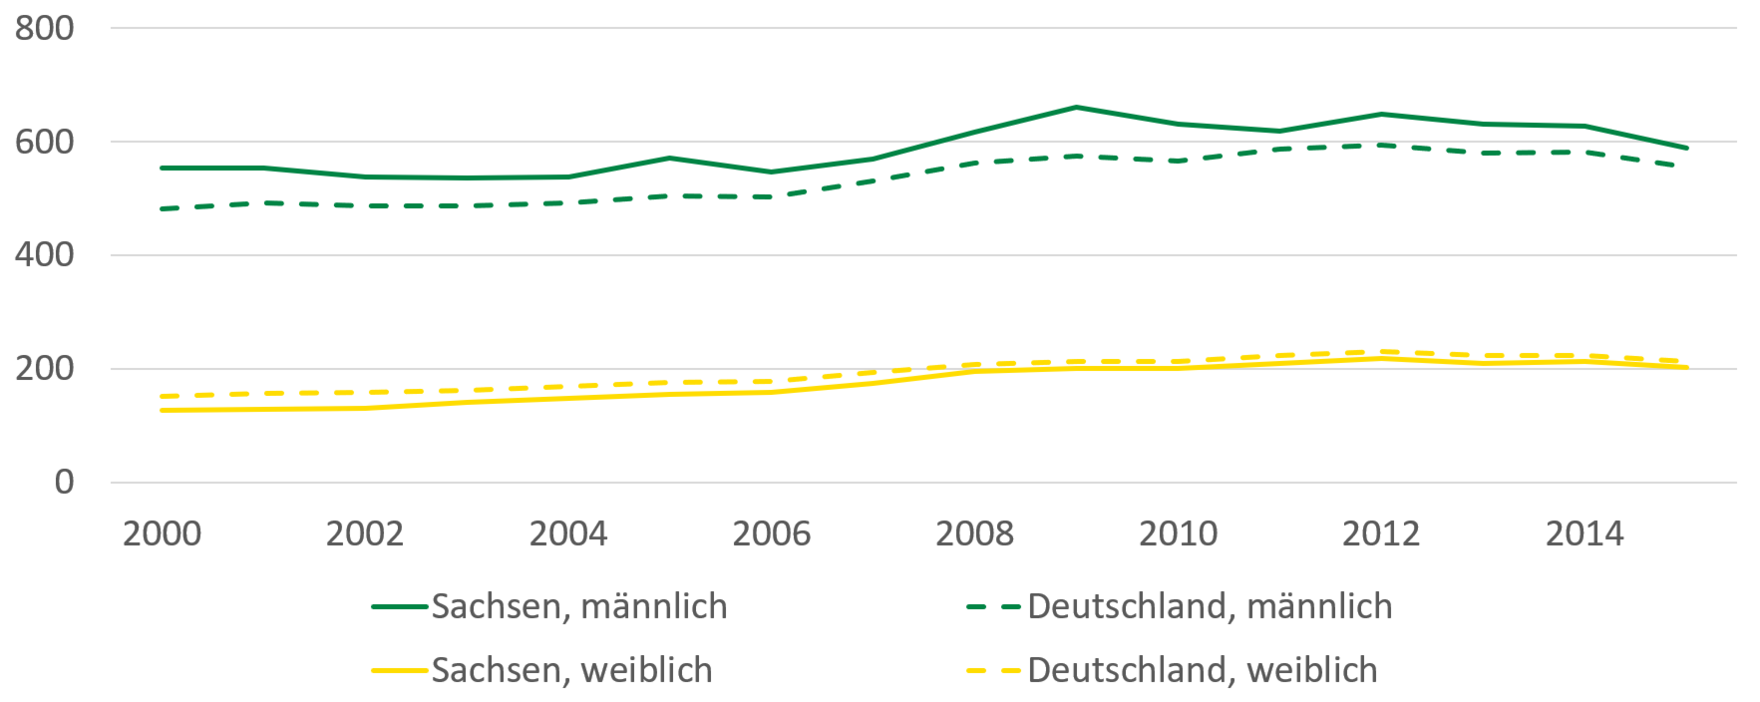 Krankenhausfälle aufgrund von Alkohol sind bei Männern in den Jahren 2000 bis 2014 auf 600 Fälle je 100.000 Einwohner leicht angestiegen. Dabei lag die Anzahl der Männer in Sachsen durchgehend über dem deutschen Durchschnitt. Krankenhausfälle bei Frauen sind von 180 auf knapp über 200 Fälle je 100.000 Einwohner leicht angestiegen. Die Anzahl der Fälle der Frauen in Sachsen ist seit 2008 vergleichbar mit dem deutschen Durchschnitt.